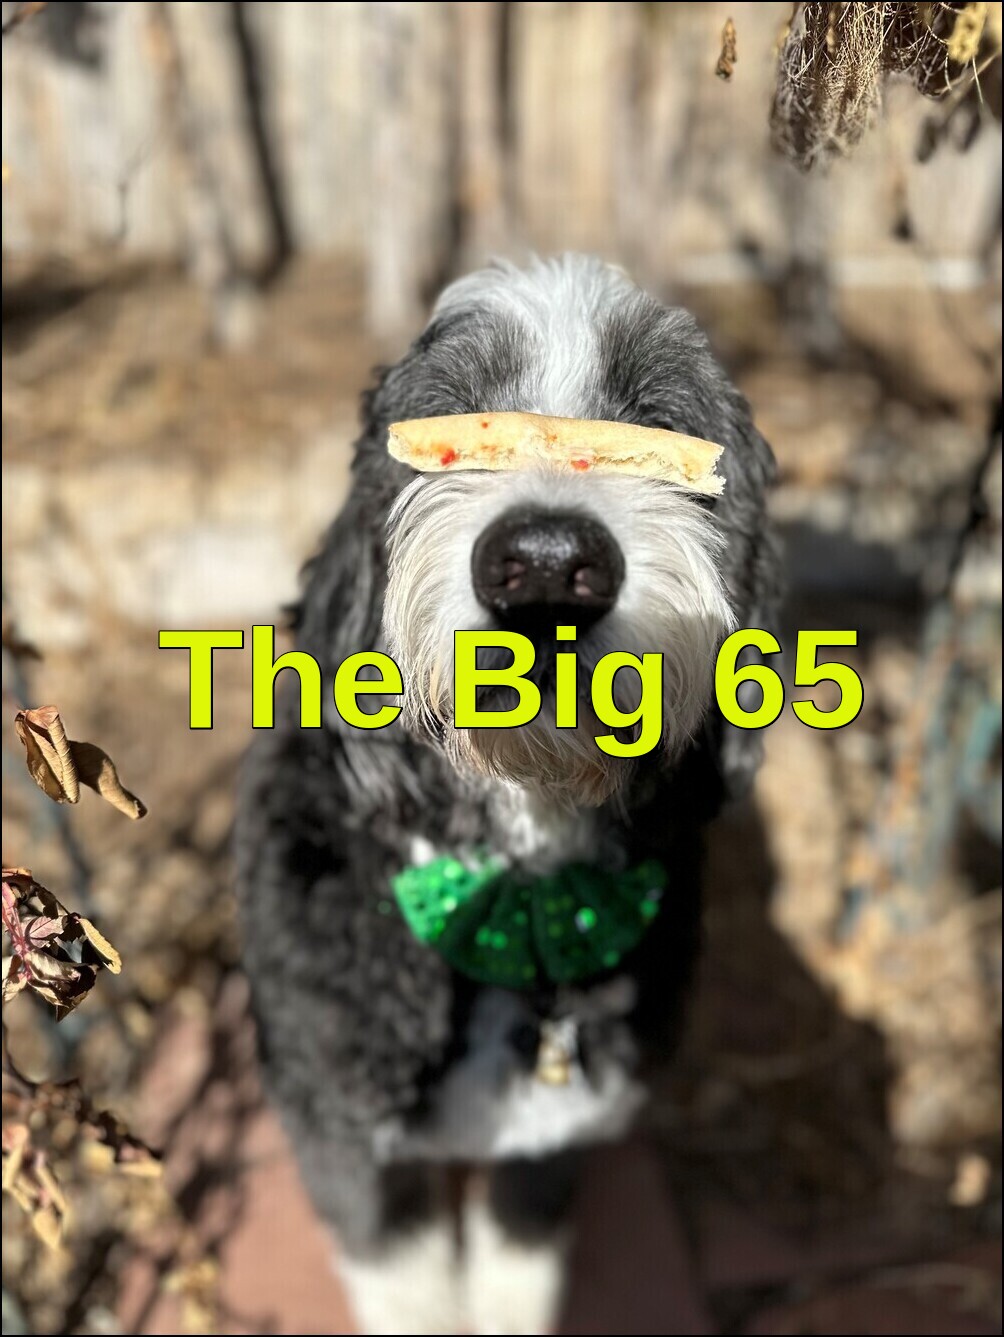 The Big 65 is a Colorado Medicare insurance broker.